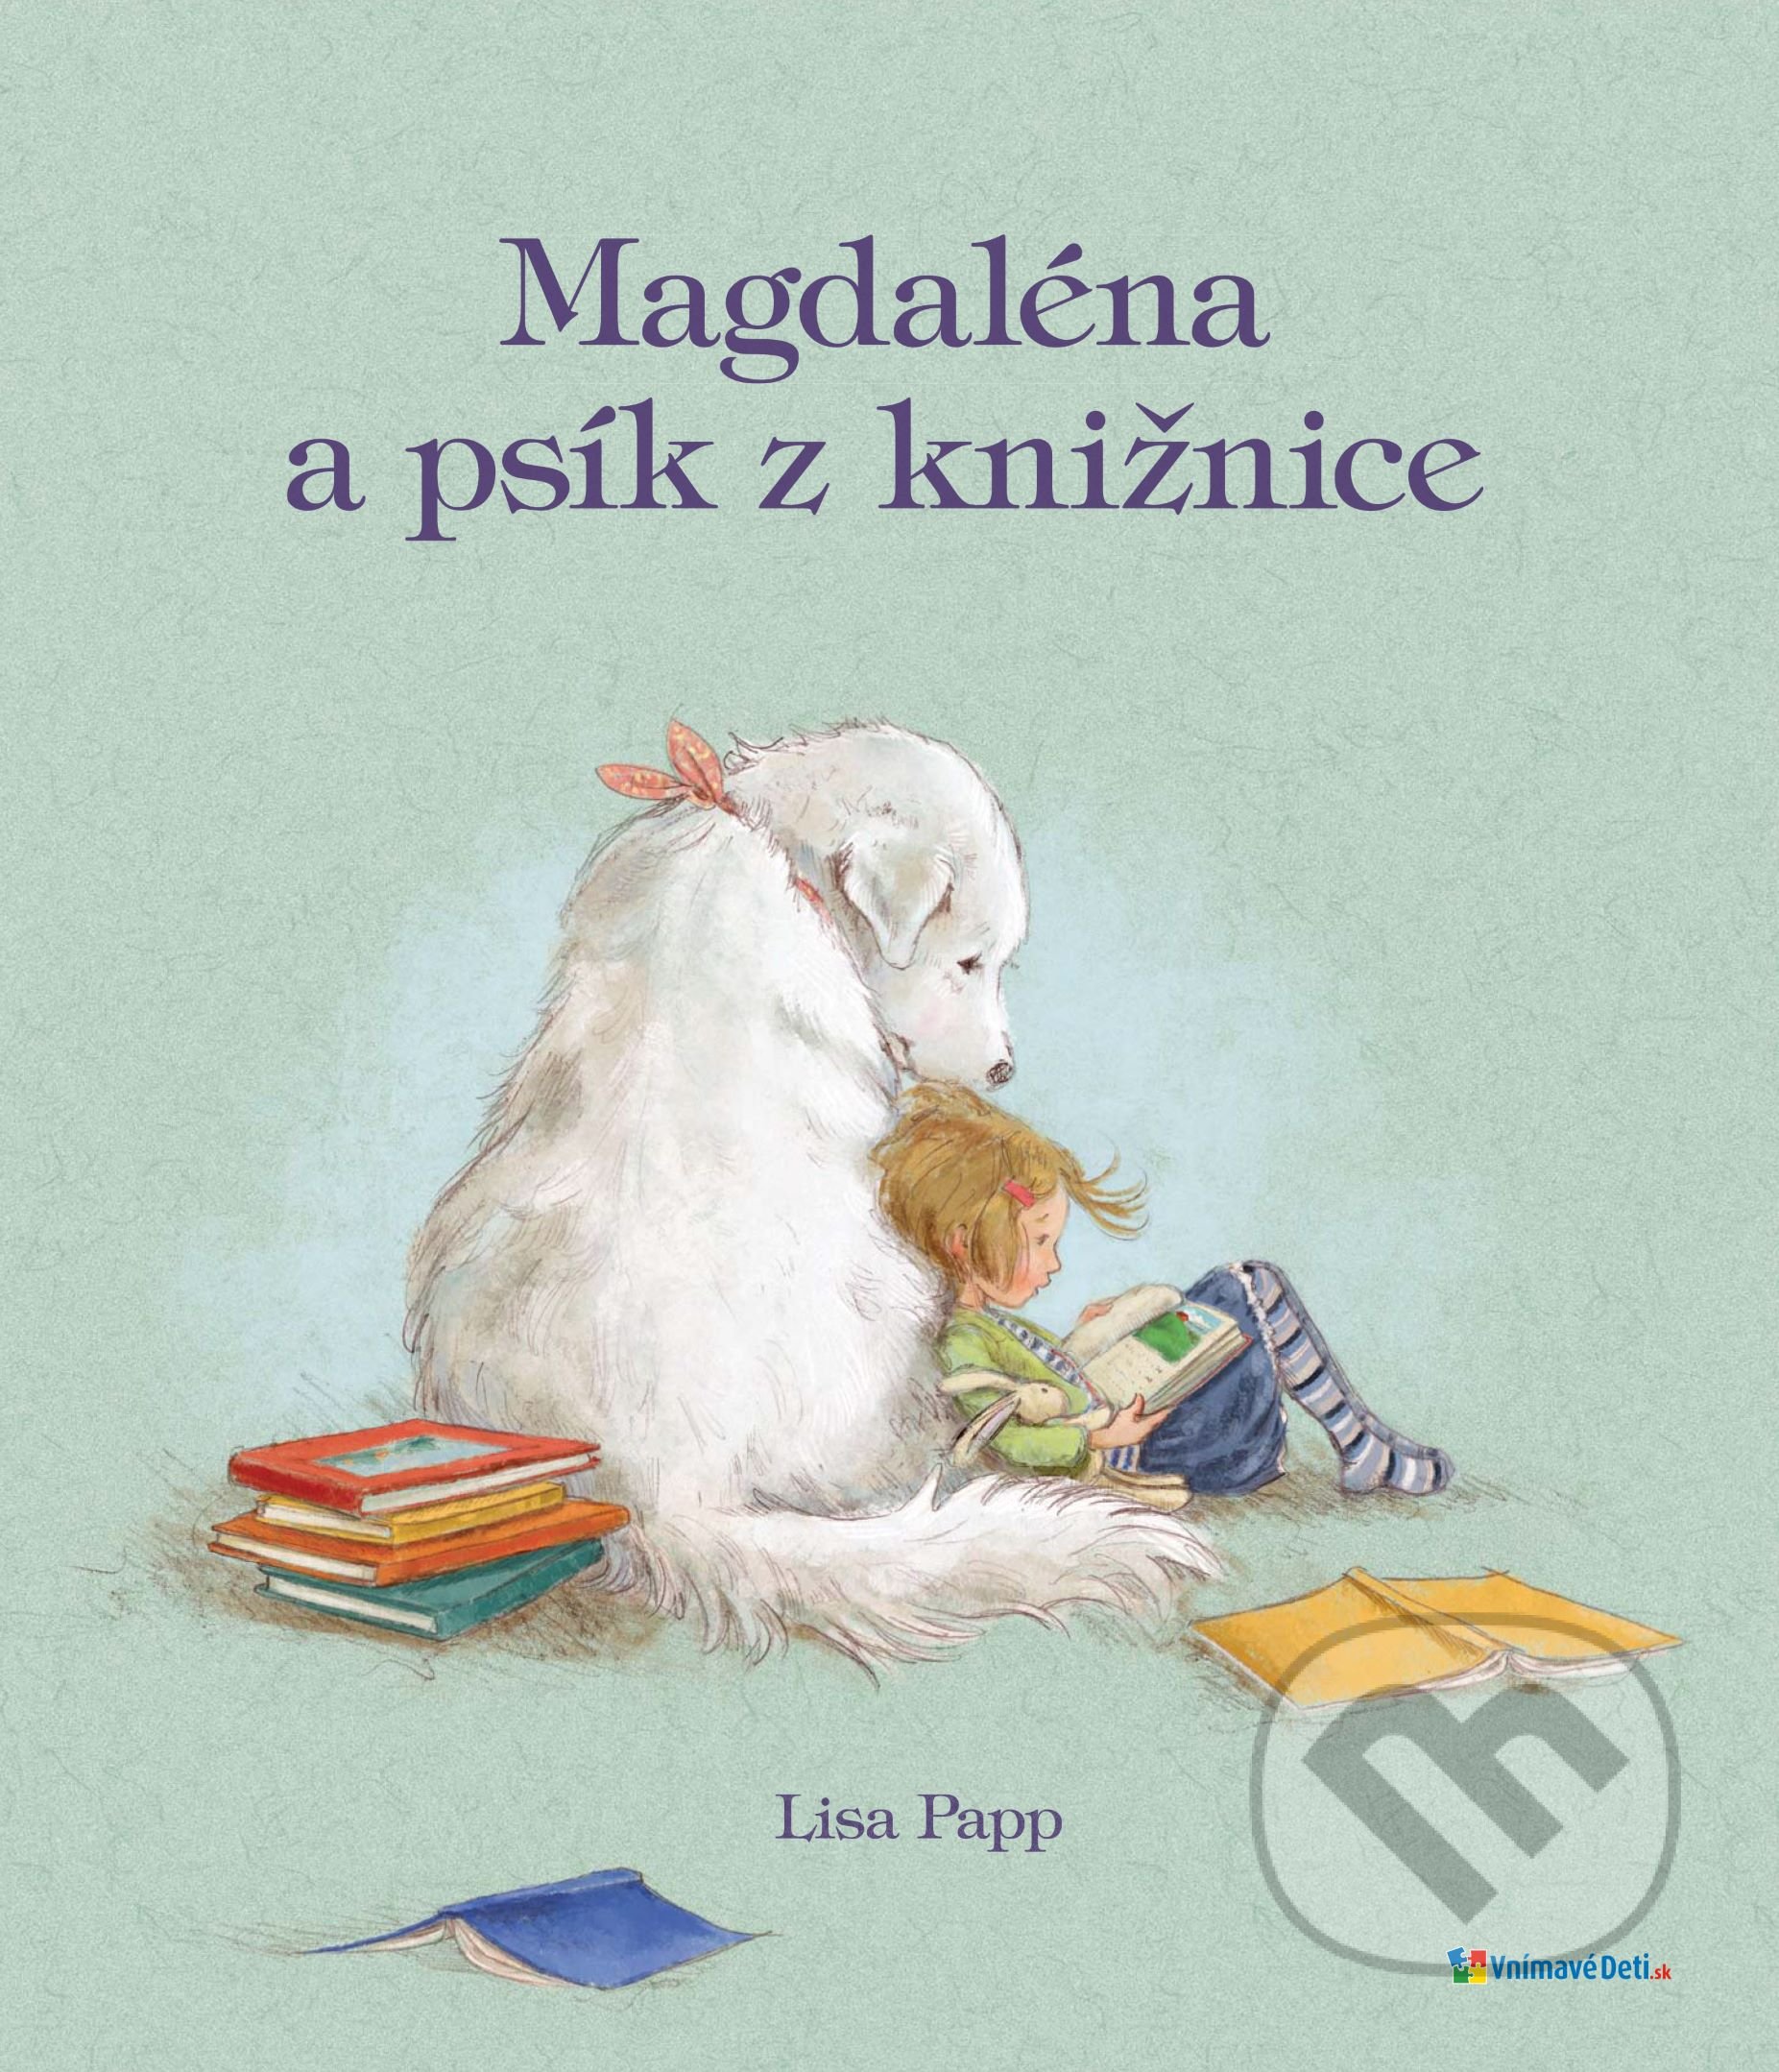 Magdaléna a psík z knižnice - Lisa Papp, 2017